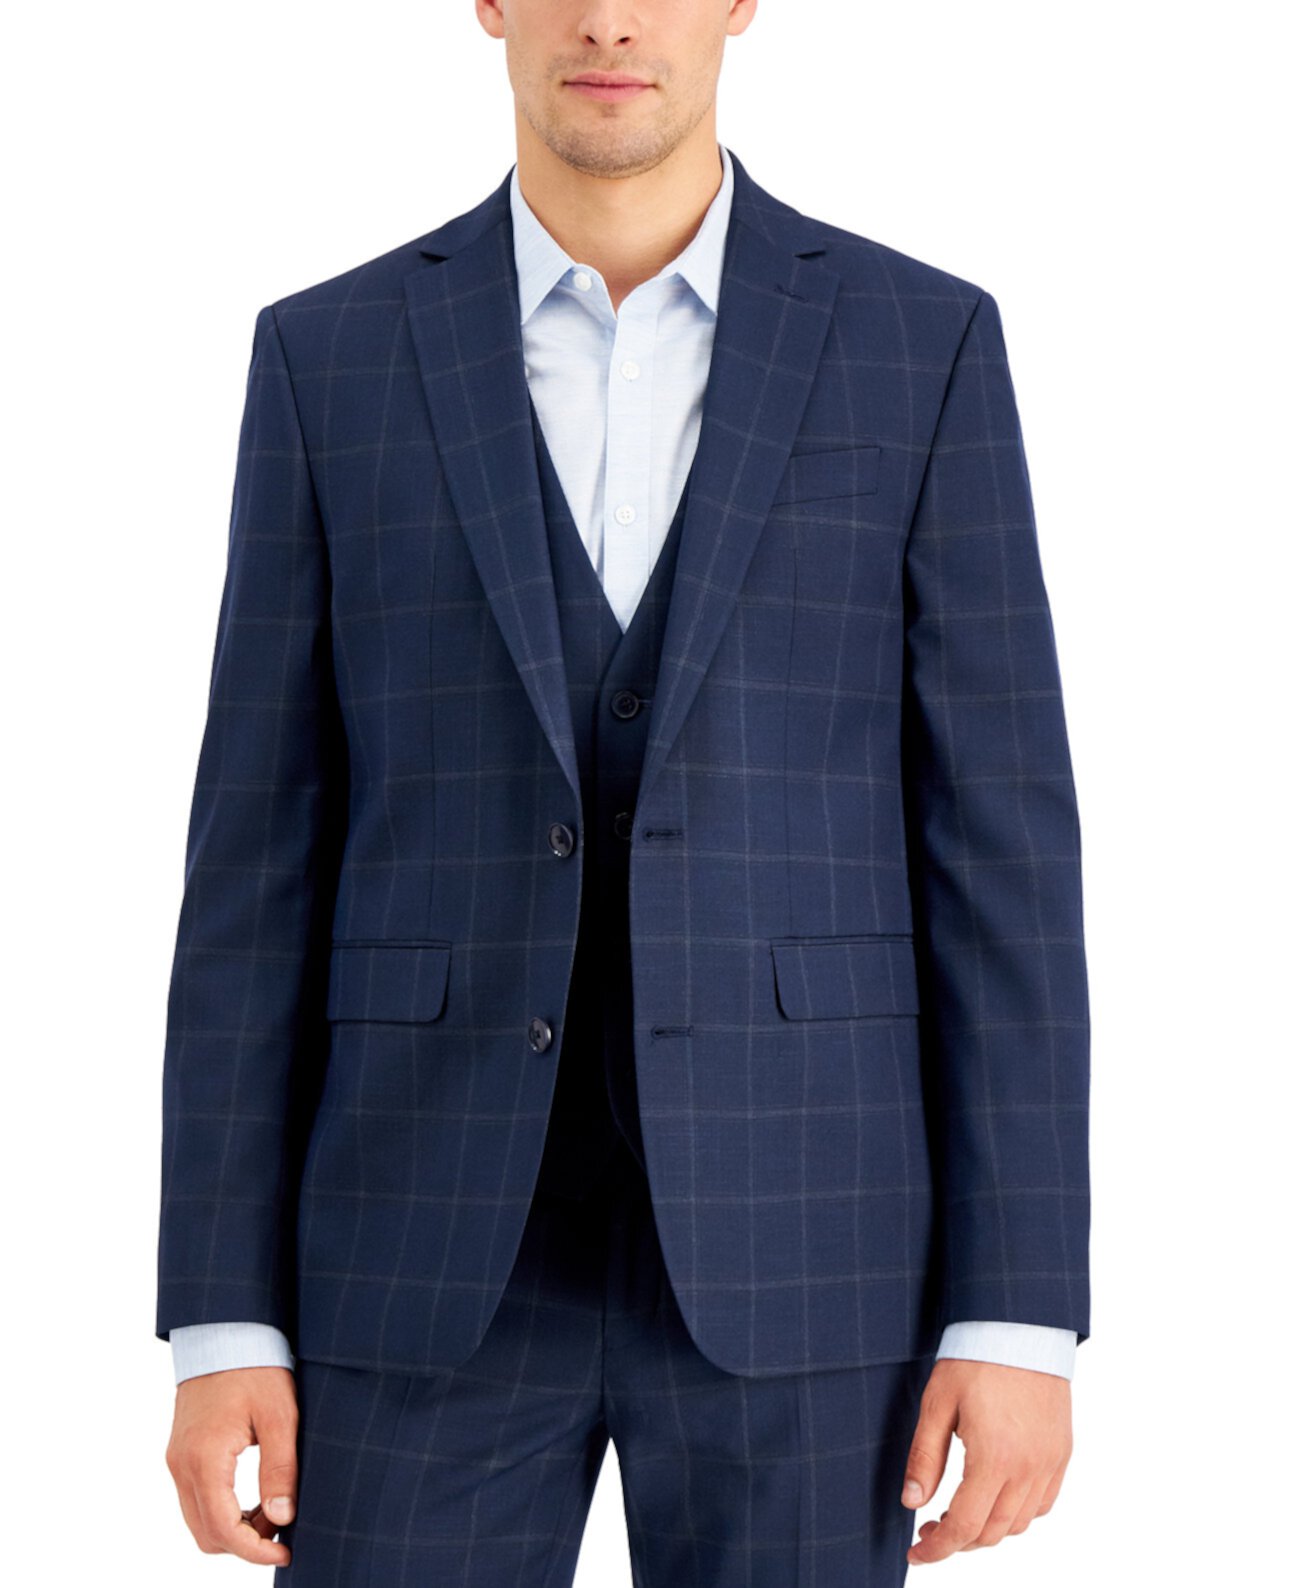 Мужской приталенный пиджак в синюю клетку с оконным стеклом, созданный для Macy's I.N.C. International Concepts